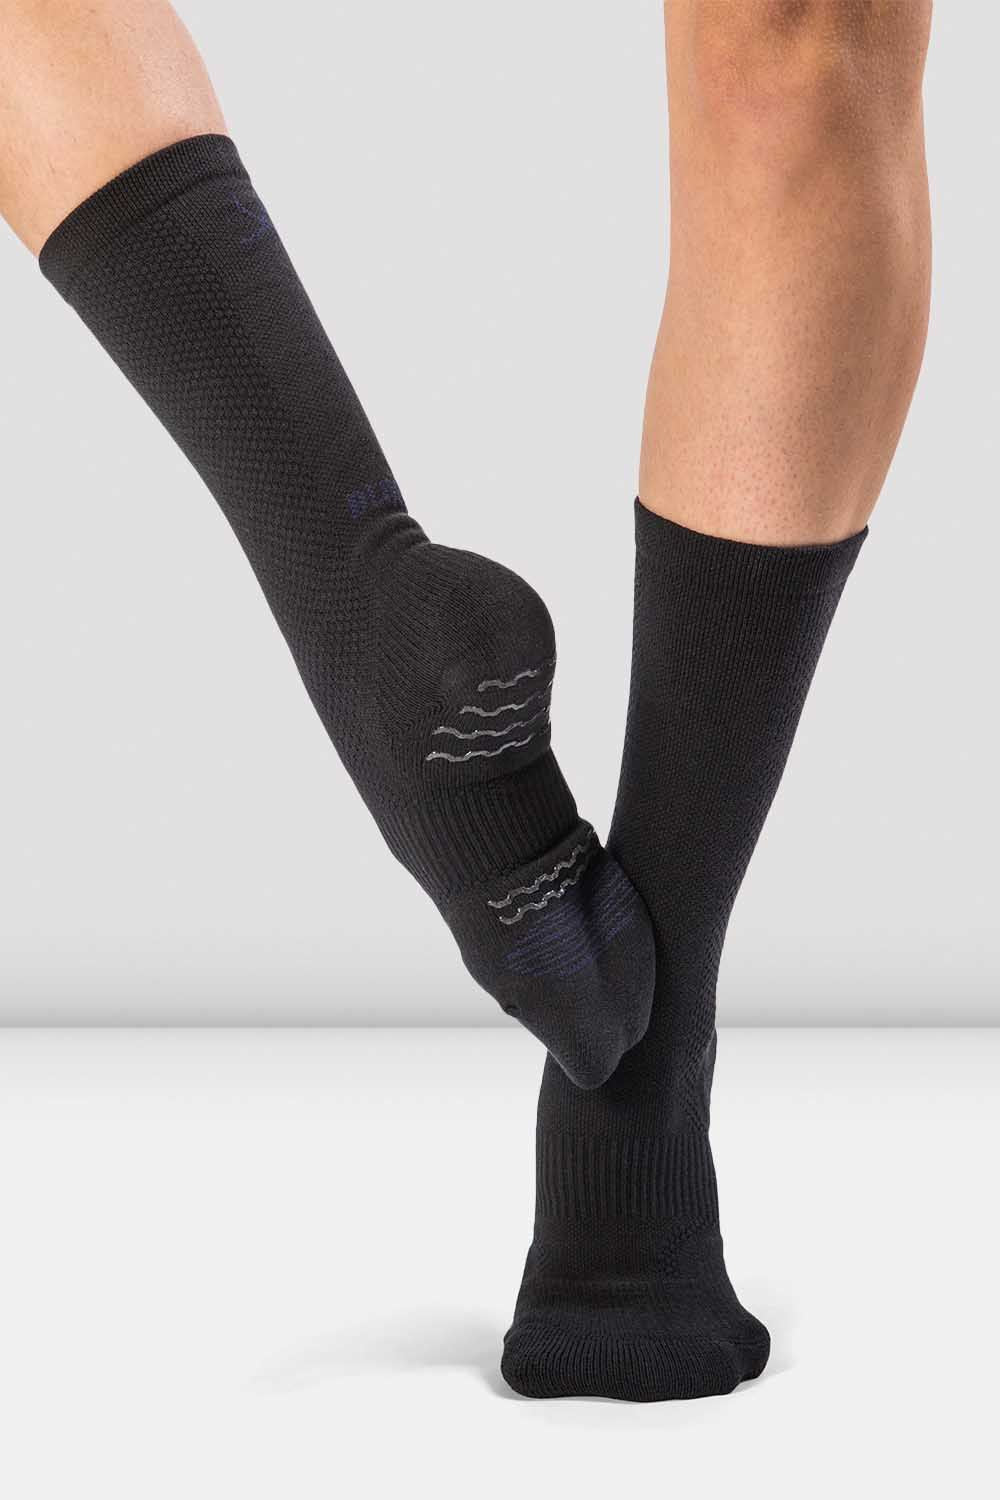 Blochsox Dance Socks – Barre & Pointe